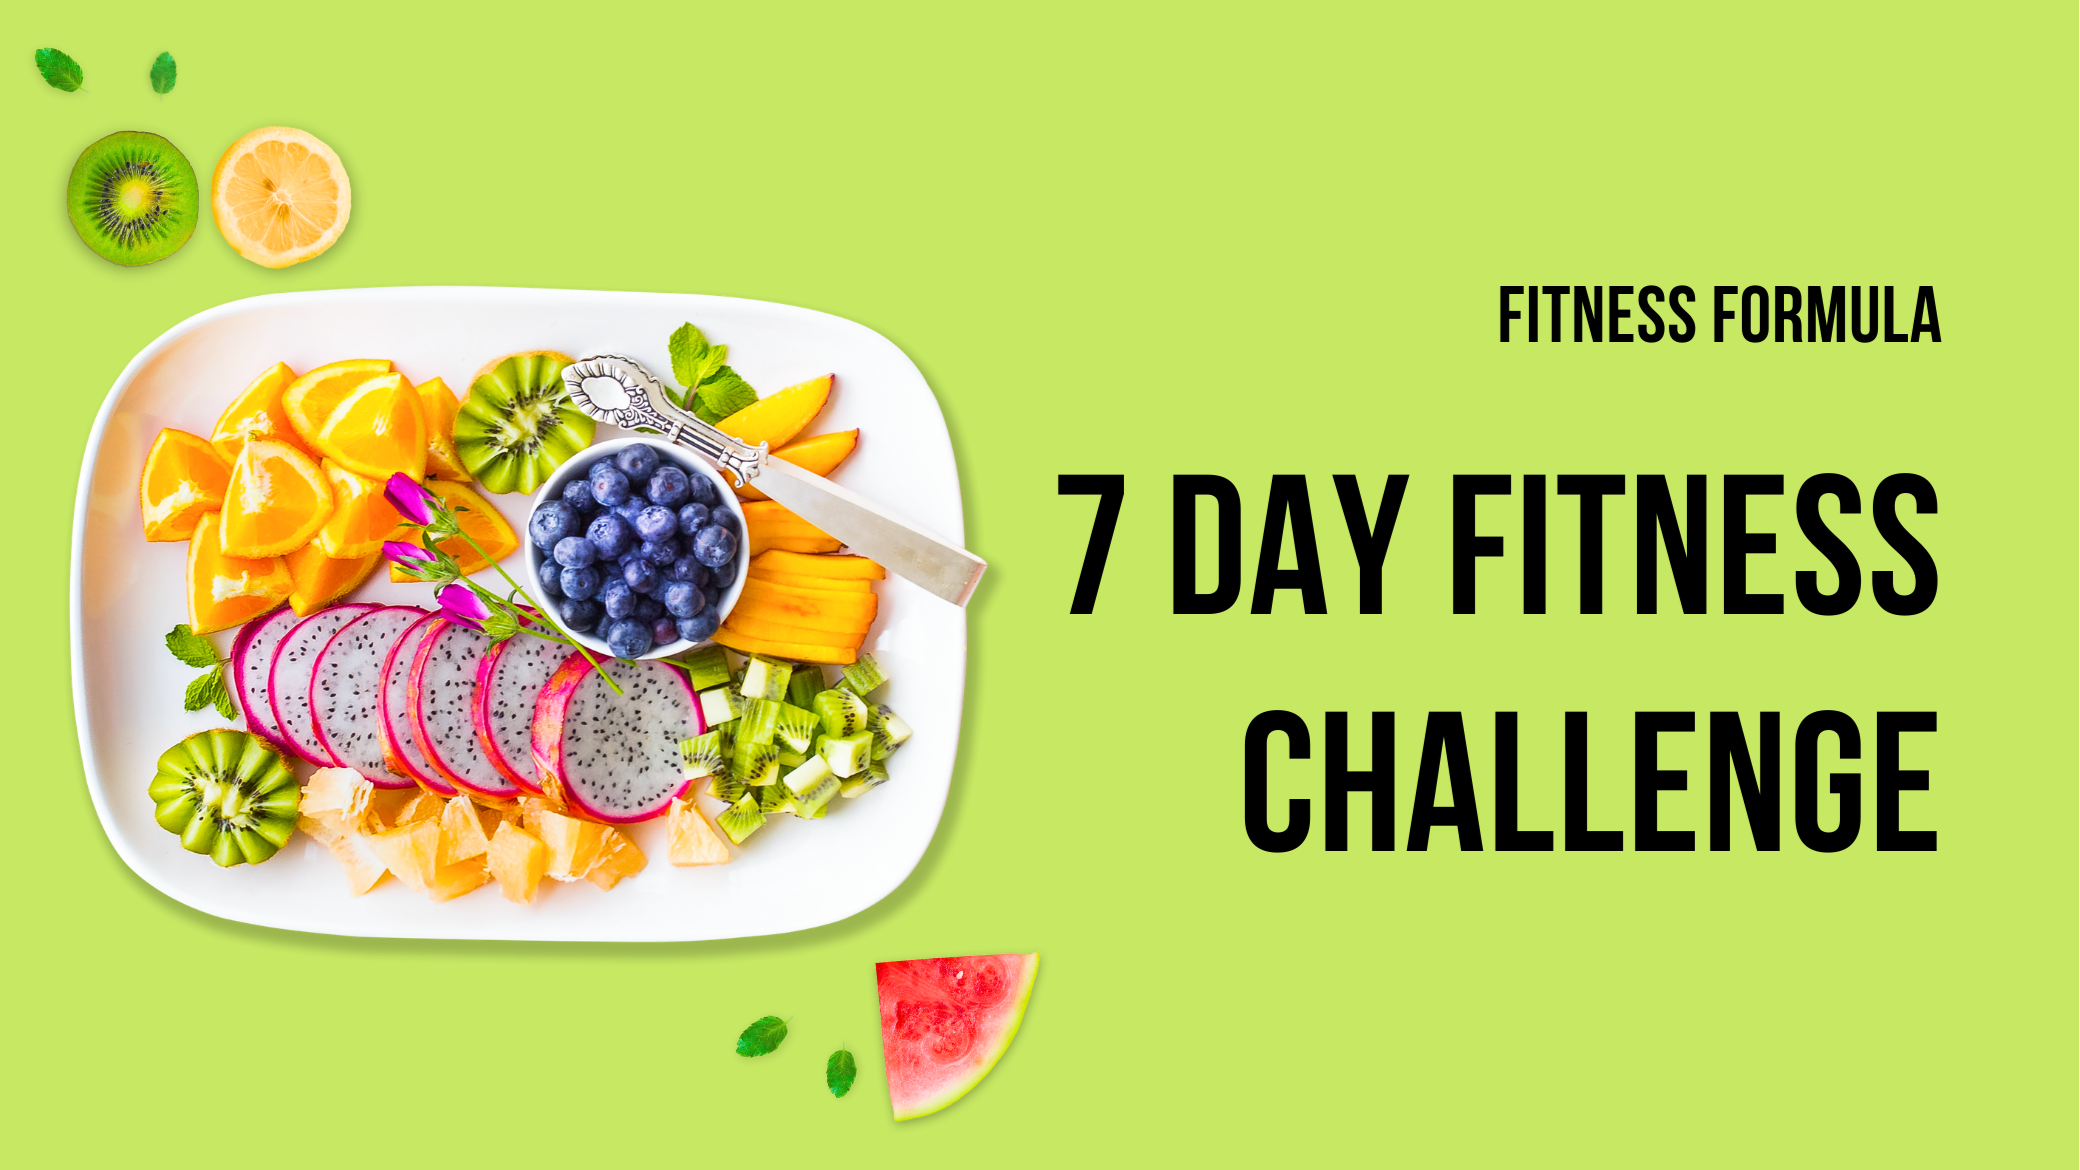 7 Days Challenge